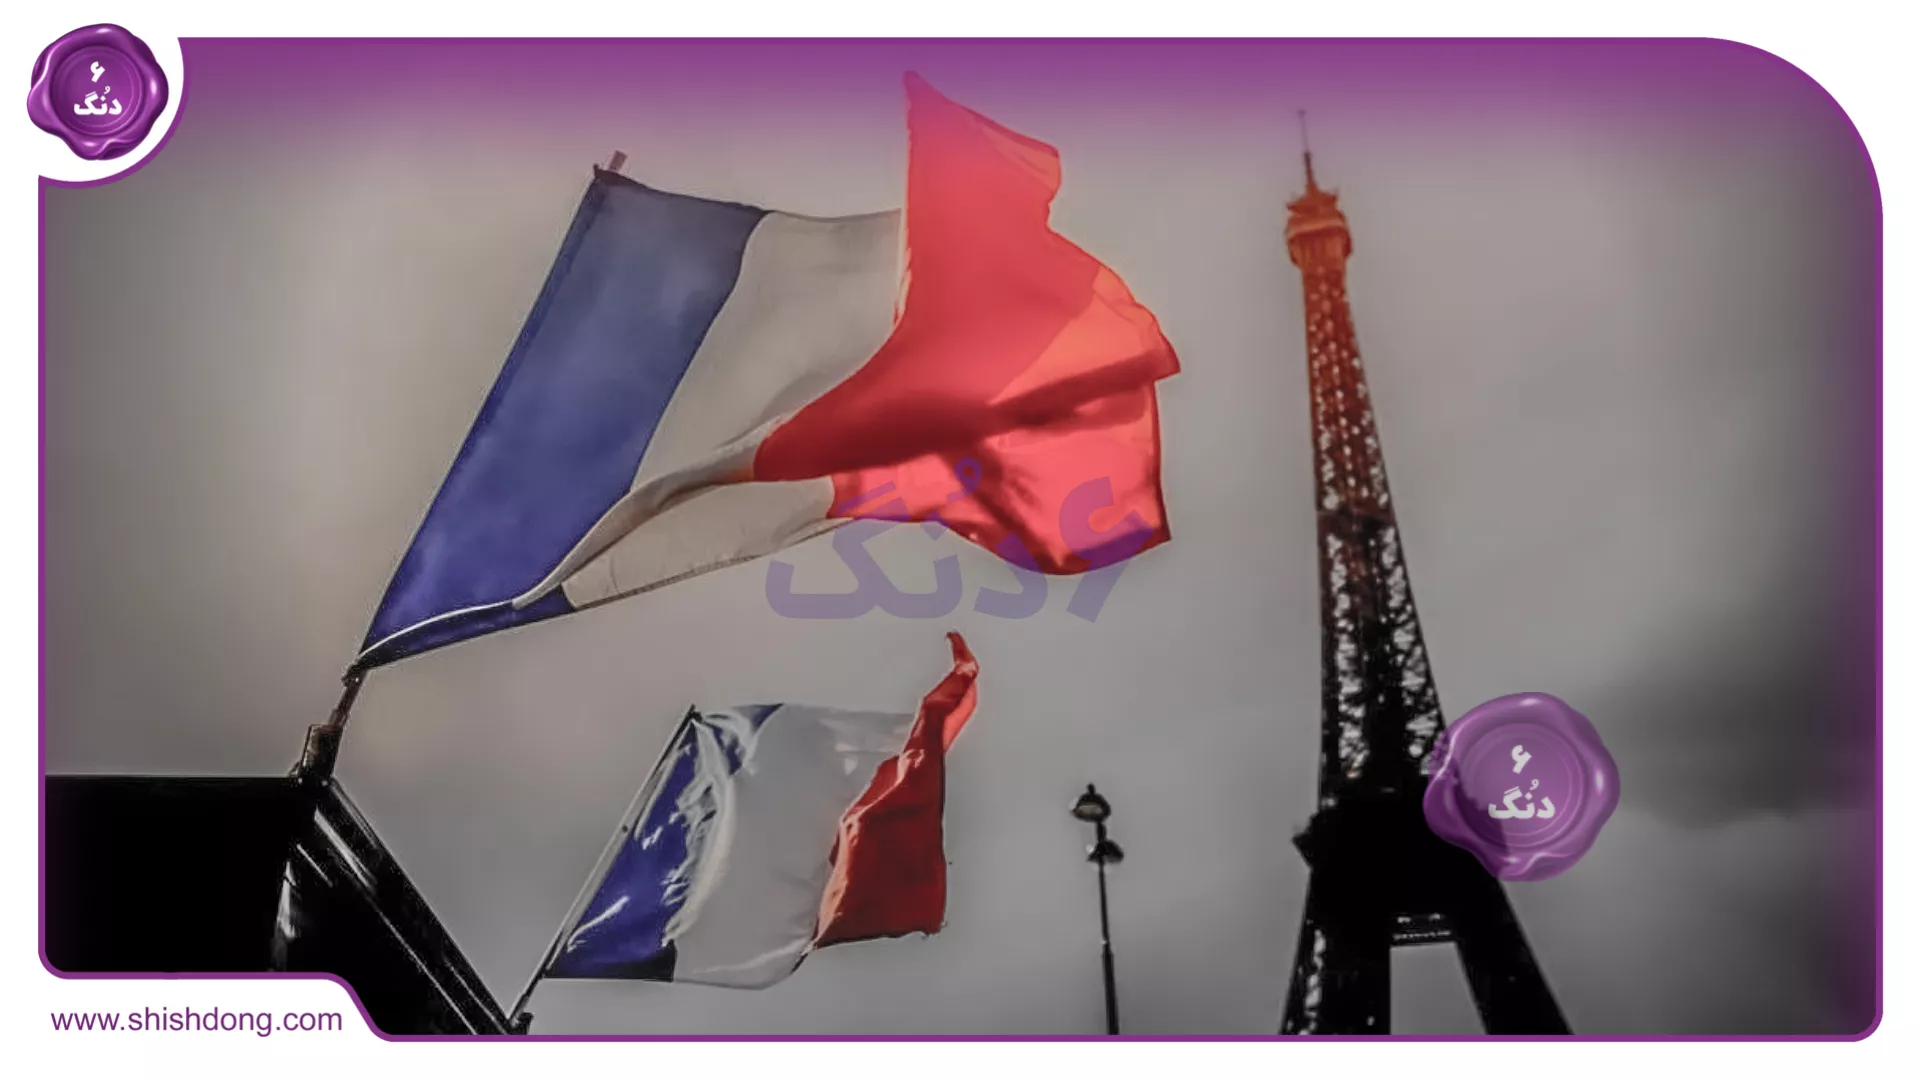 پرچم فرانسه و برج ایفل